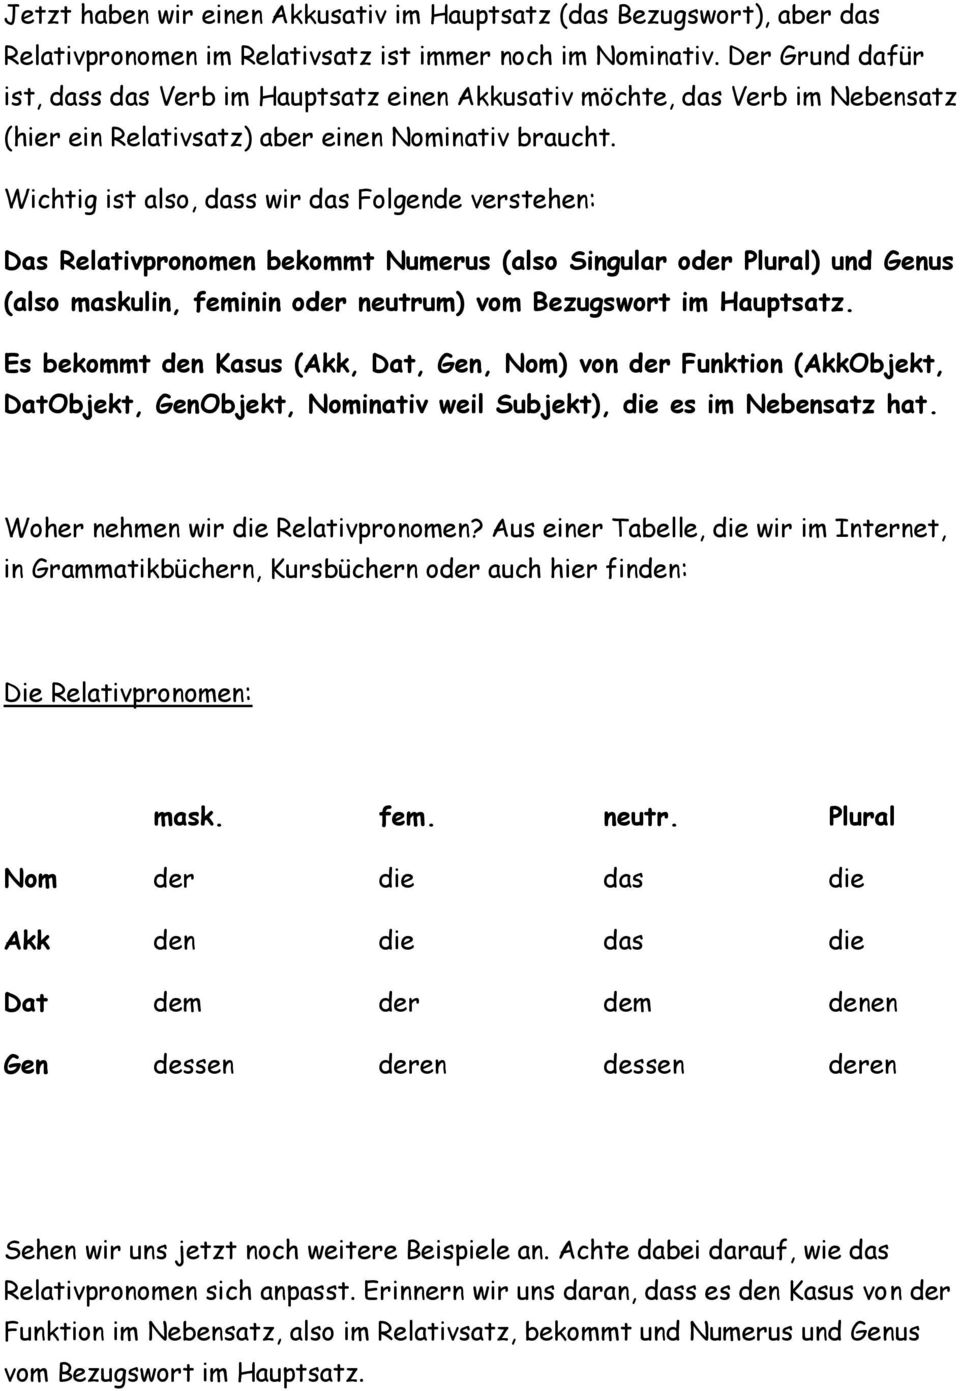 Neutrum maskulin übungen feminin Deutsche Grammatik